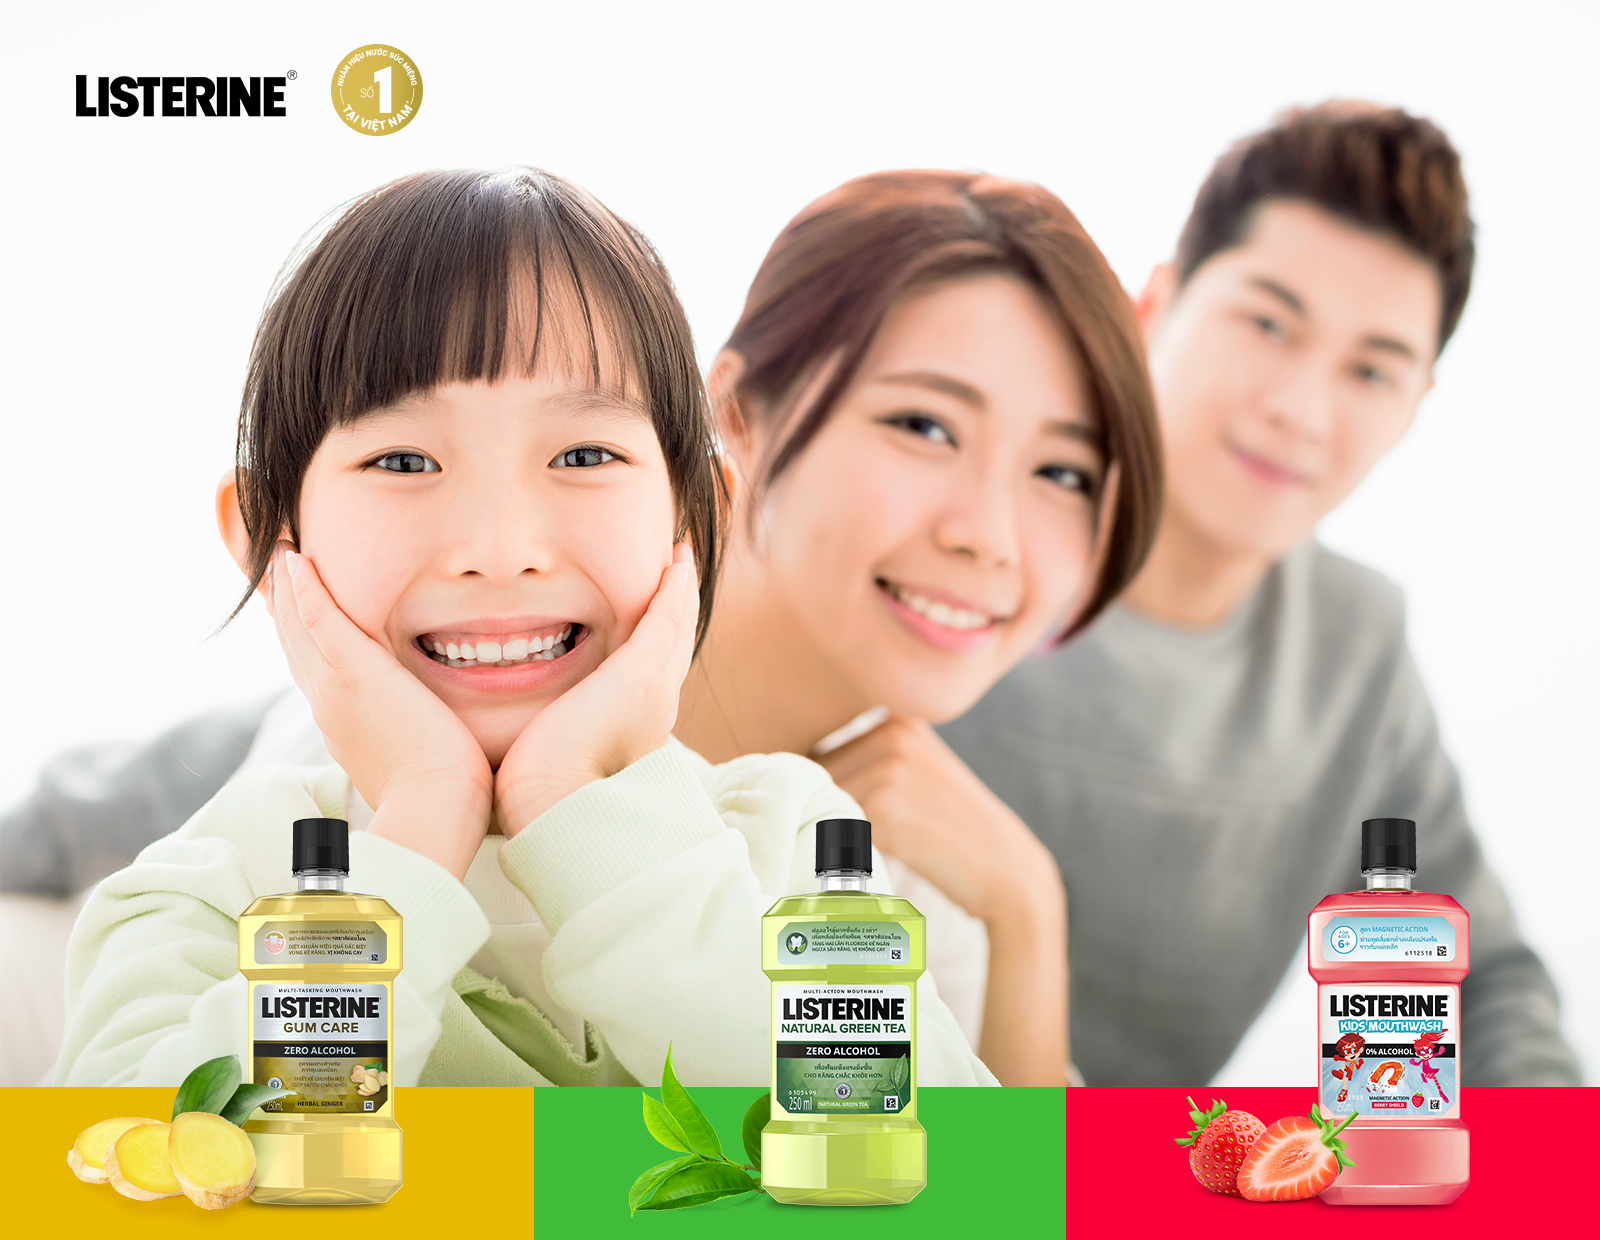 Listerine hiện là “lựa chọn quốc dân” của rất nhiều gia đình Việt với nhiều dòng sản phẩm phù hợp với các lứa tuổi